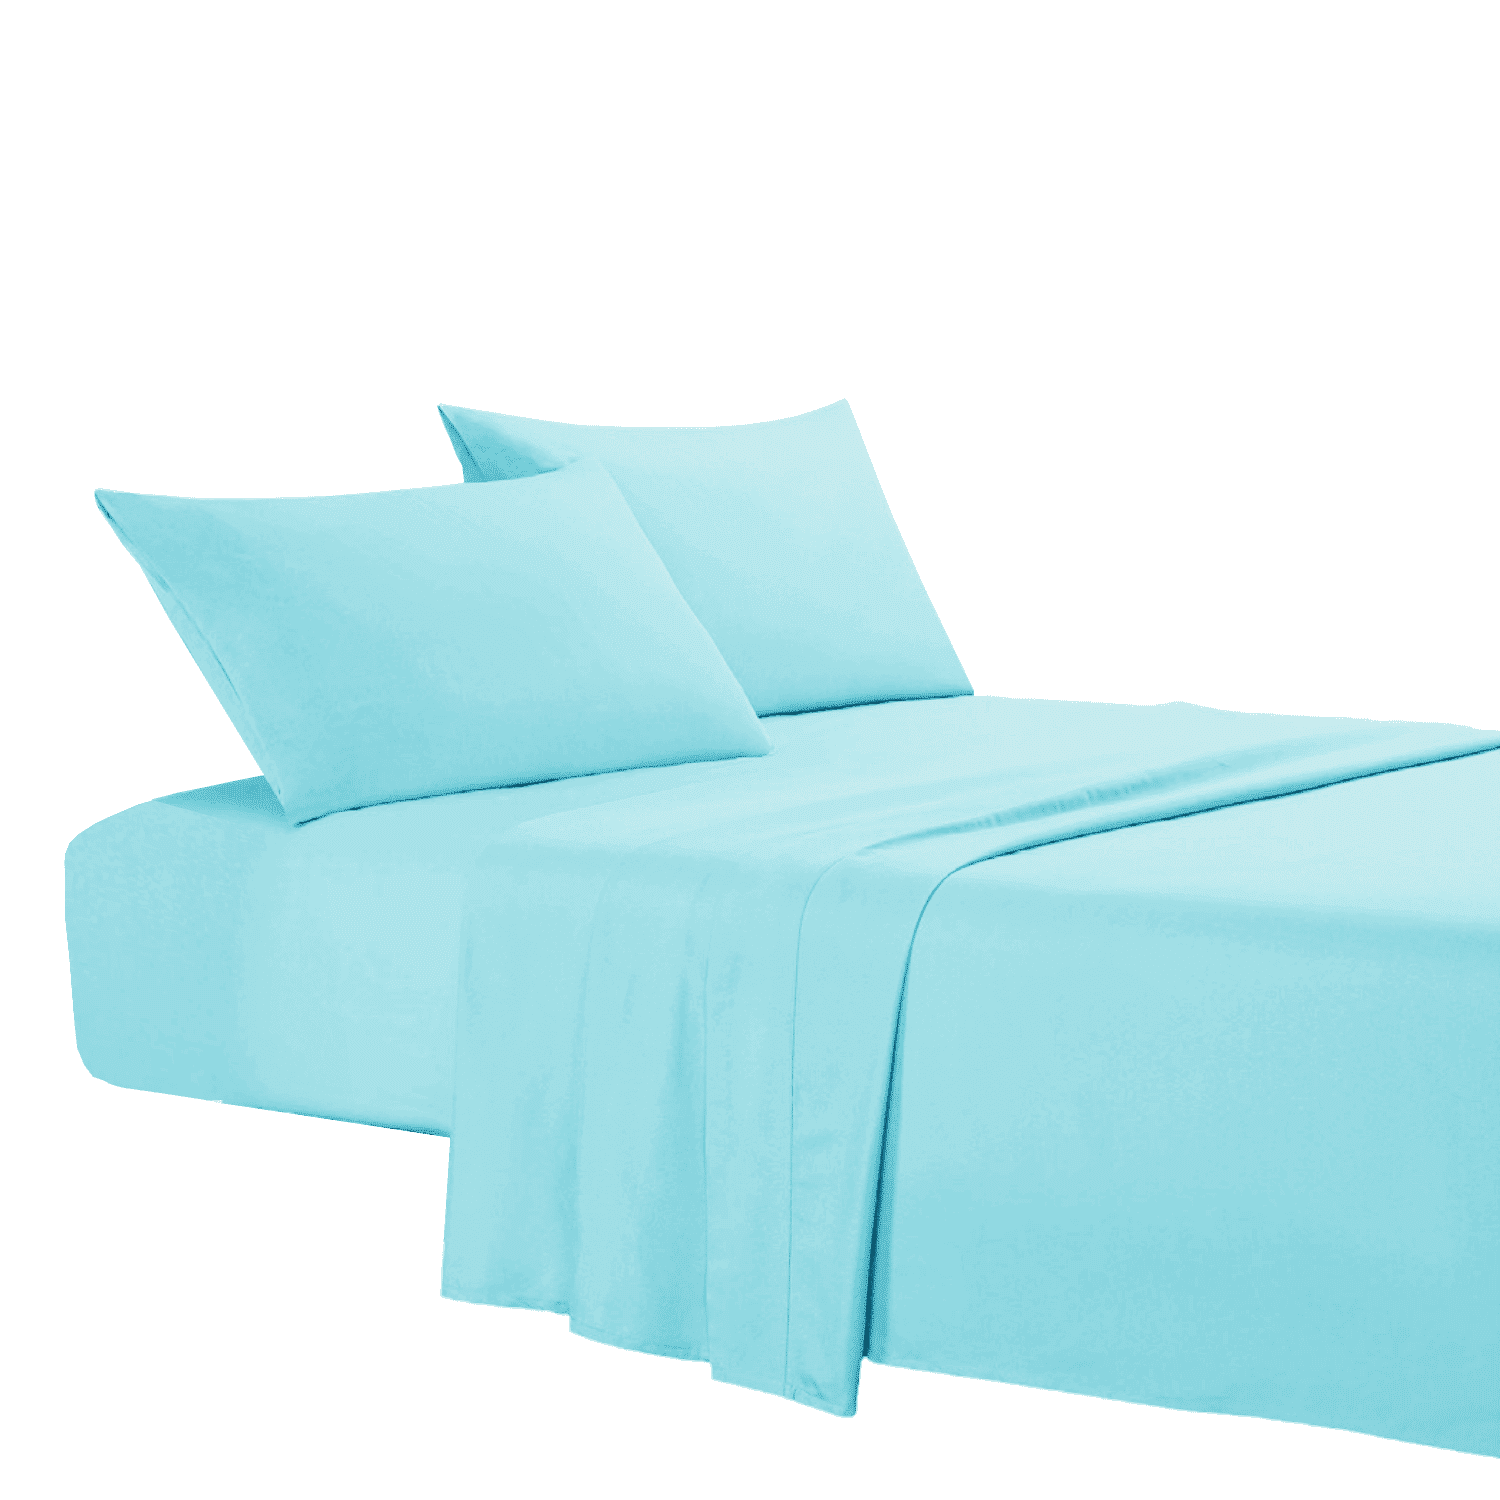 azzurro-coloratissimi-completo-lenzuola-puro-cotone-tinta-unita-cielo-fold-letto